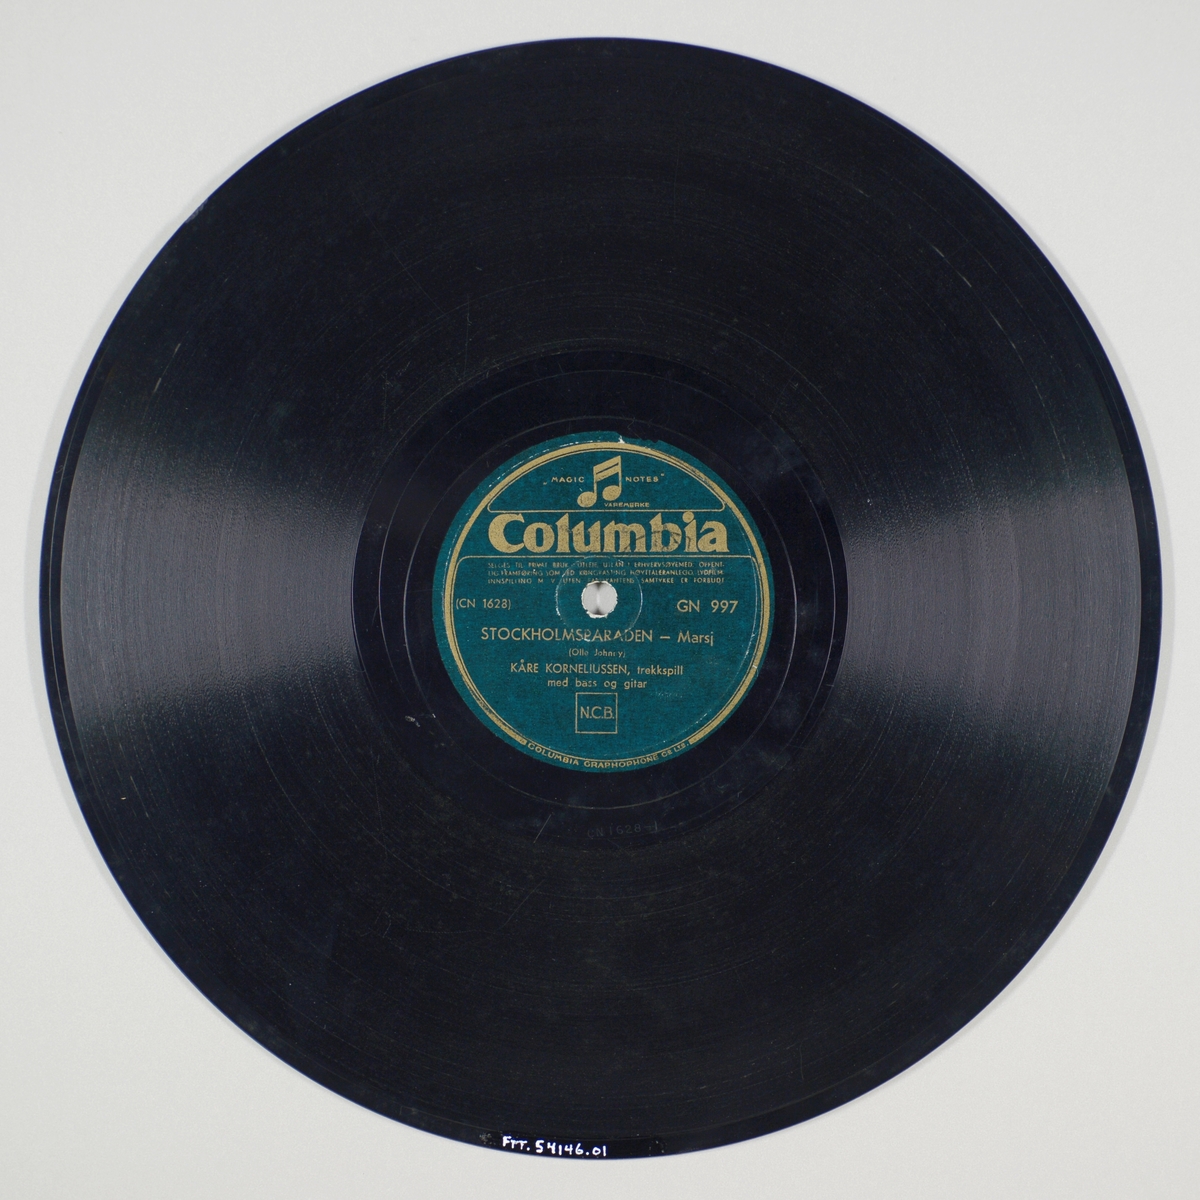 FTT.54146.01:
Svart grammofonplate laget av bakelitt og skjellak. Etiketten er mørk grønn med sølvskrift. Logoen til denne plateserien er en dobbeltnote som er øverst på etiketten.

FTT.54146.02:
Plateomslag til platen laget av papir i fargene rødt og hvitt og er identisk på begge sider. Plateomslaget er ikke originalt da det er omslaget til en Polydor-plate. På omslaget står plateselskapets navn. På forsidensiden er det trykt "Dans og underholdning. 78 omdreininger", mens det på baksiden står selskapets rettigheter. Logoen til Polydor står øverst til venstre, mens det nederst til høyre er en mannsfigur med en kontrabass og en dame foran en mikrofon.